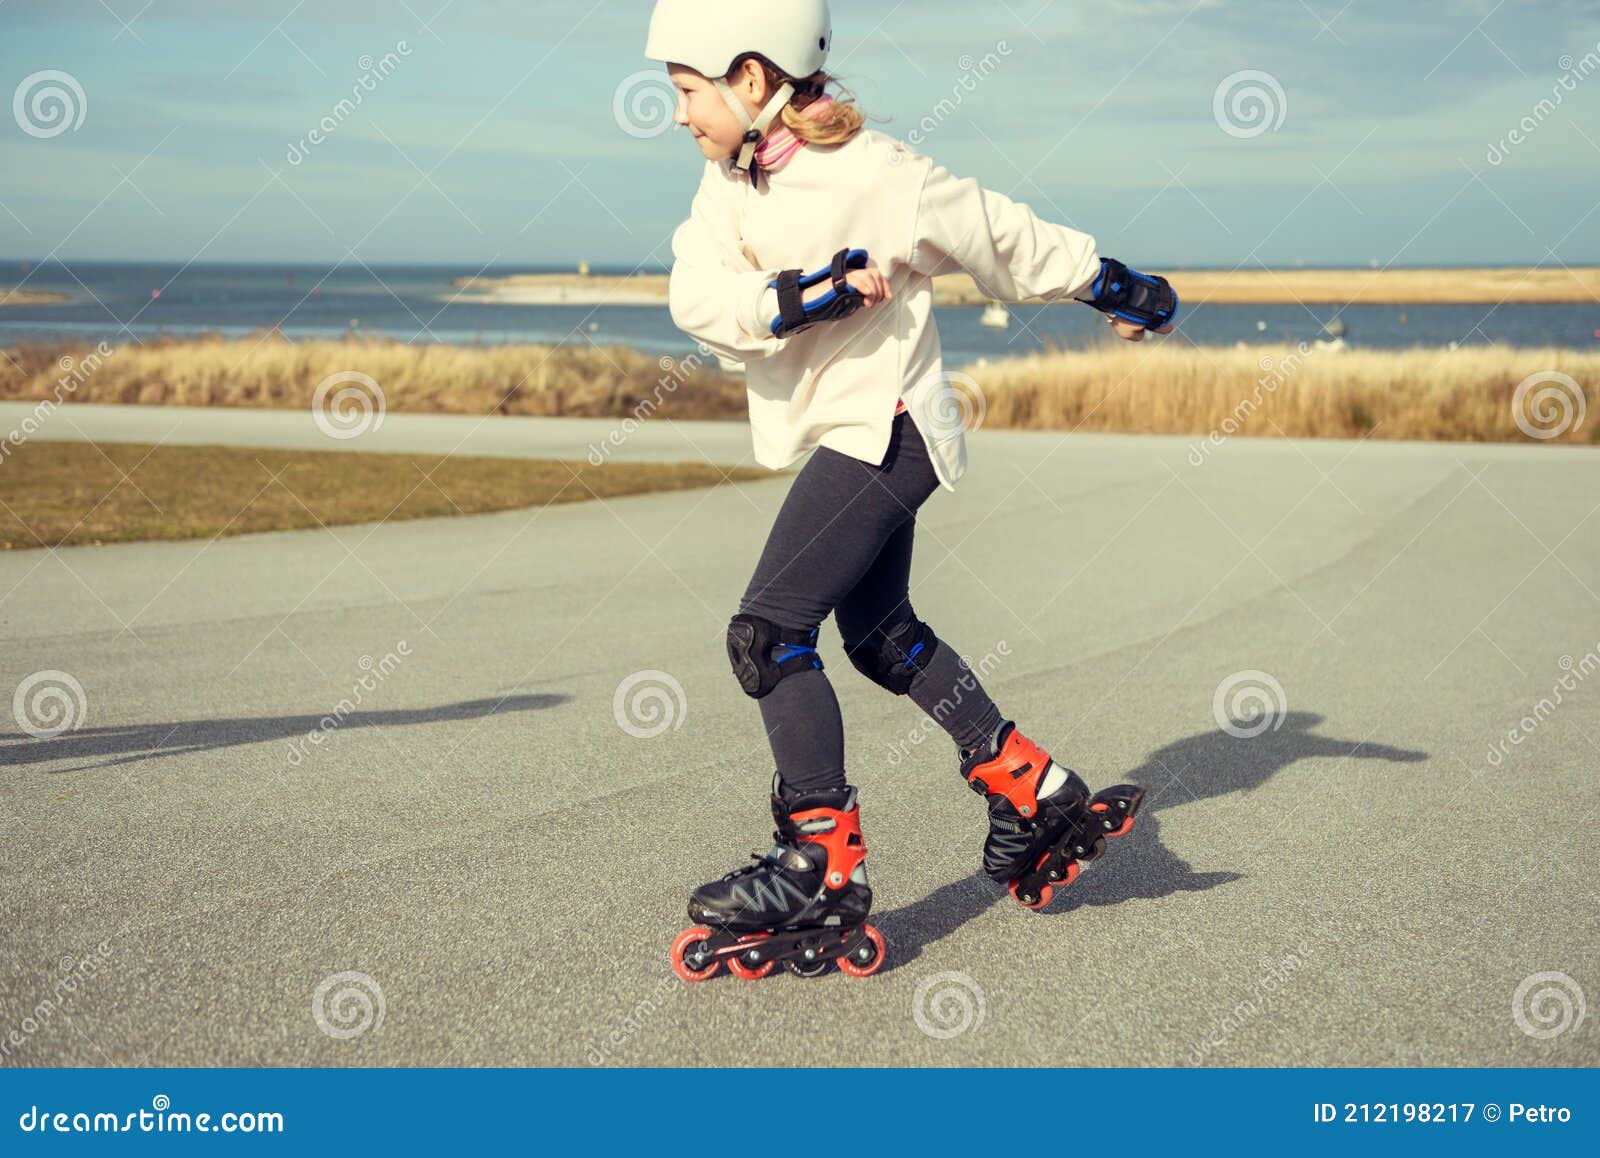 https://thumbs.dreamstime.com/z/ni%C3%B1a-feliz-en-blanco-casco-l%C3%ADnea-patines-y-equipo-de-seguridad-divertirse-durante-el-patinaje-d%C3%ADa-soleado-adolescente-212198217.jpg